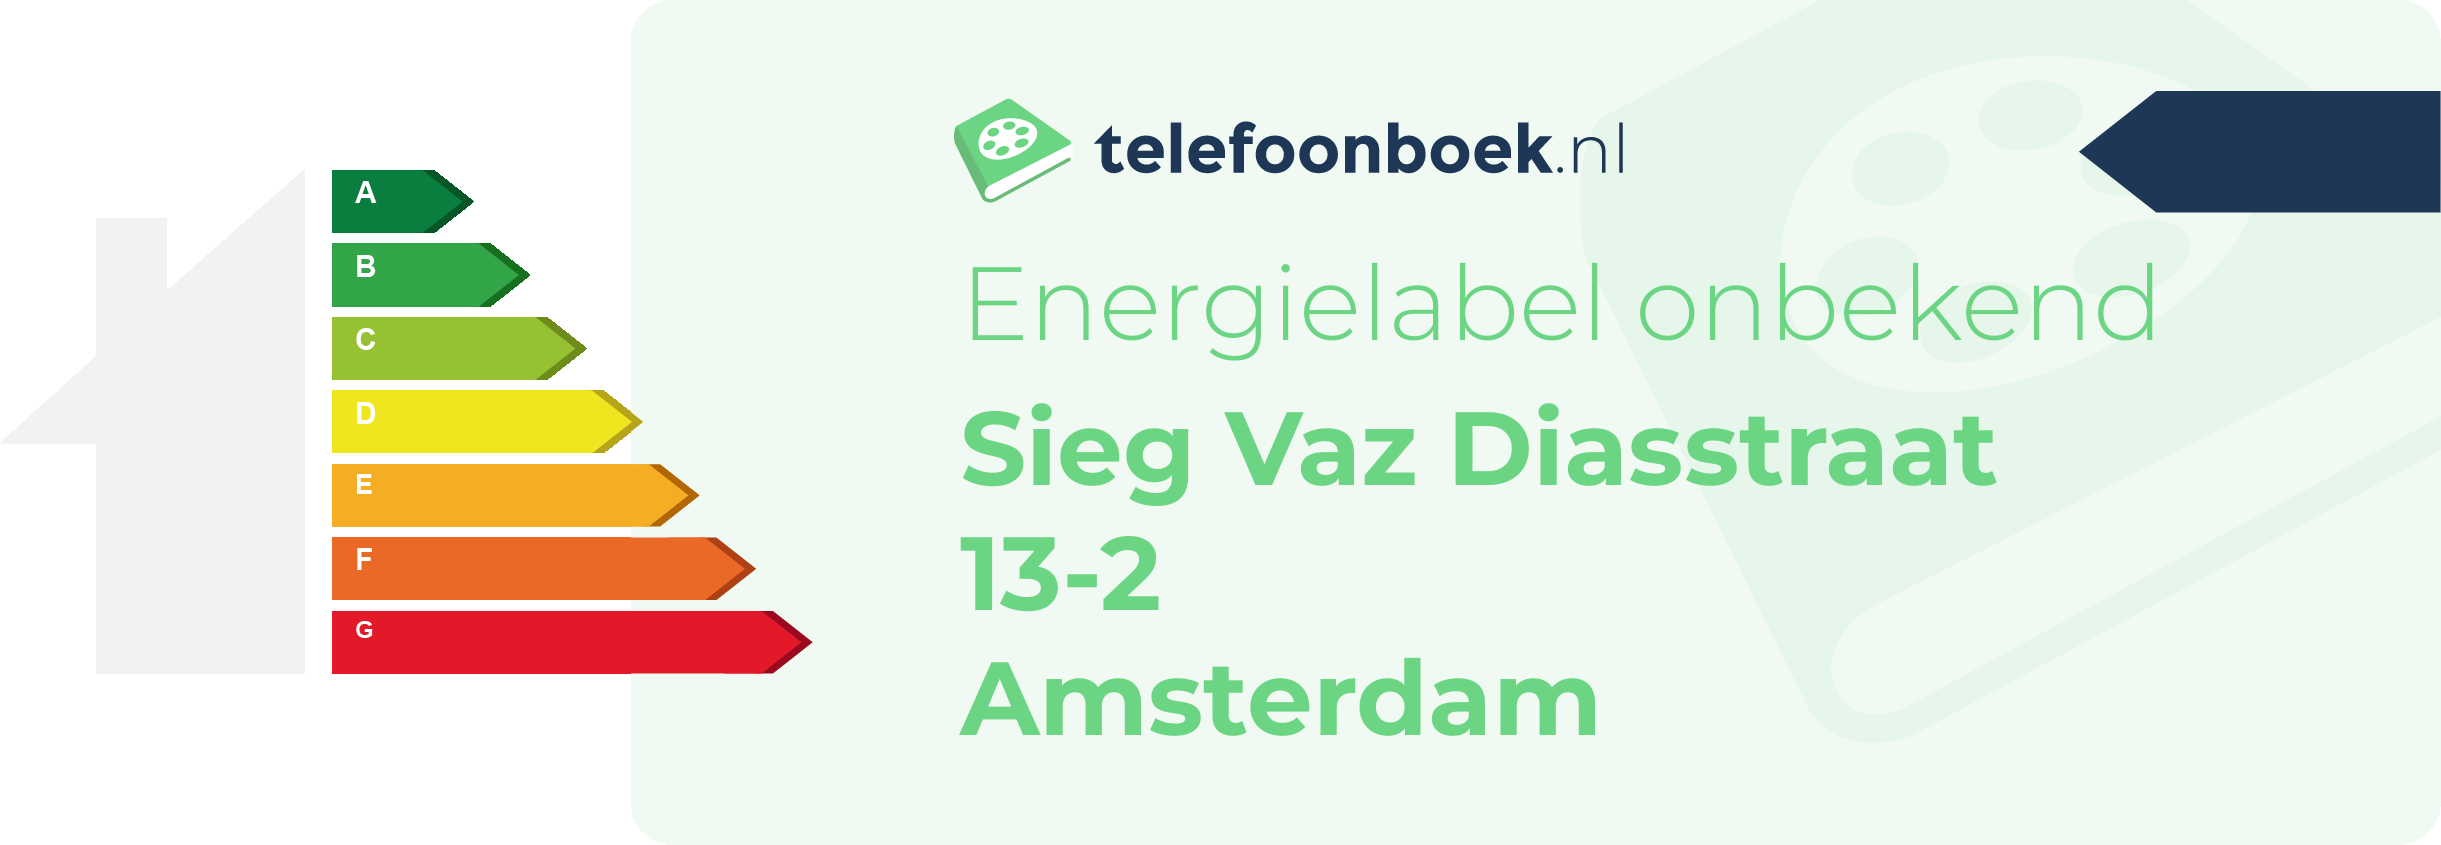 Energielabel Sieg Vaz Diasstraat 13-2 Amsterdam